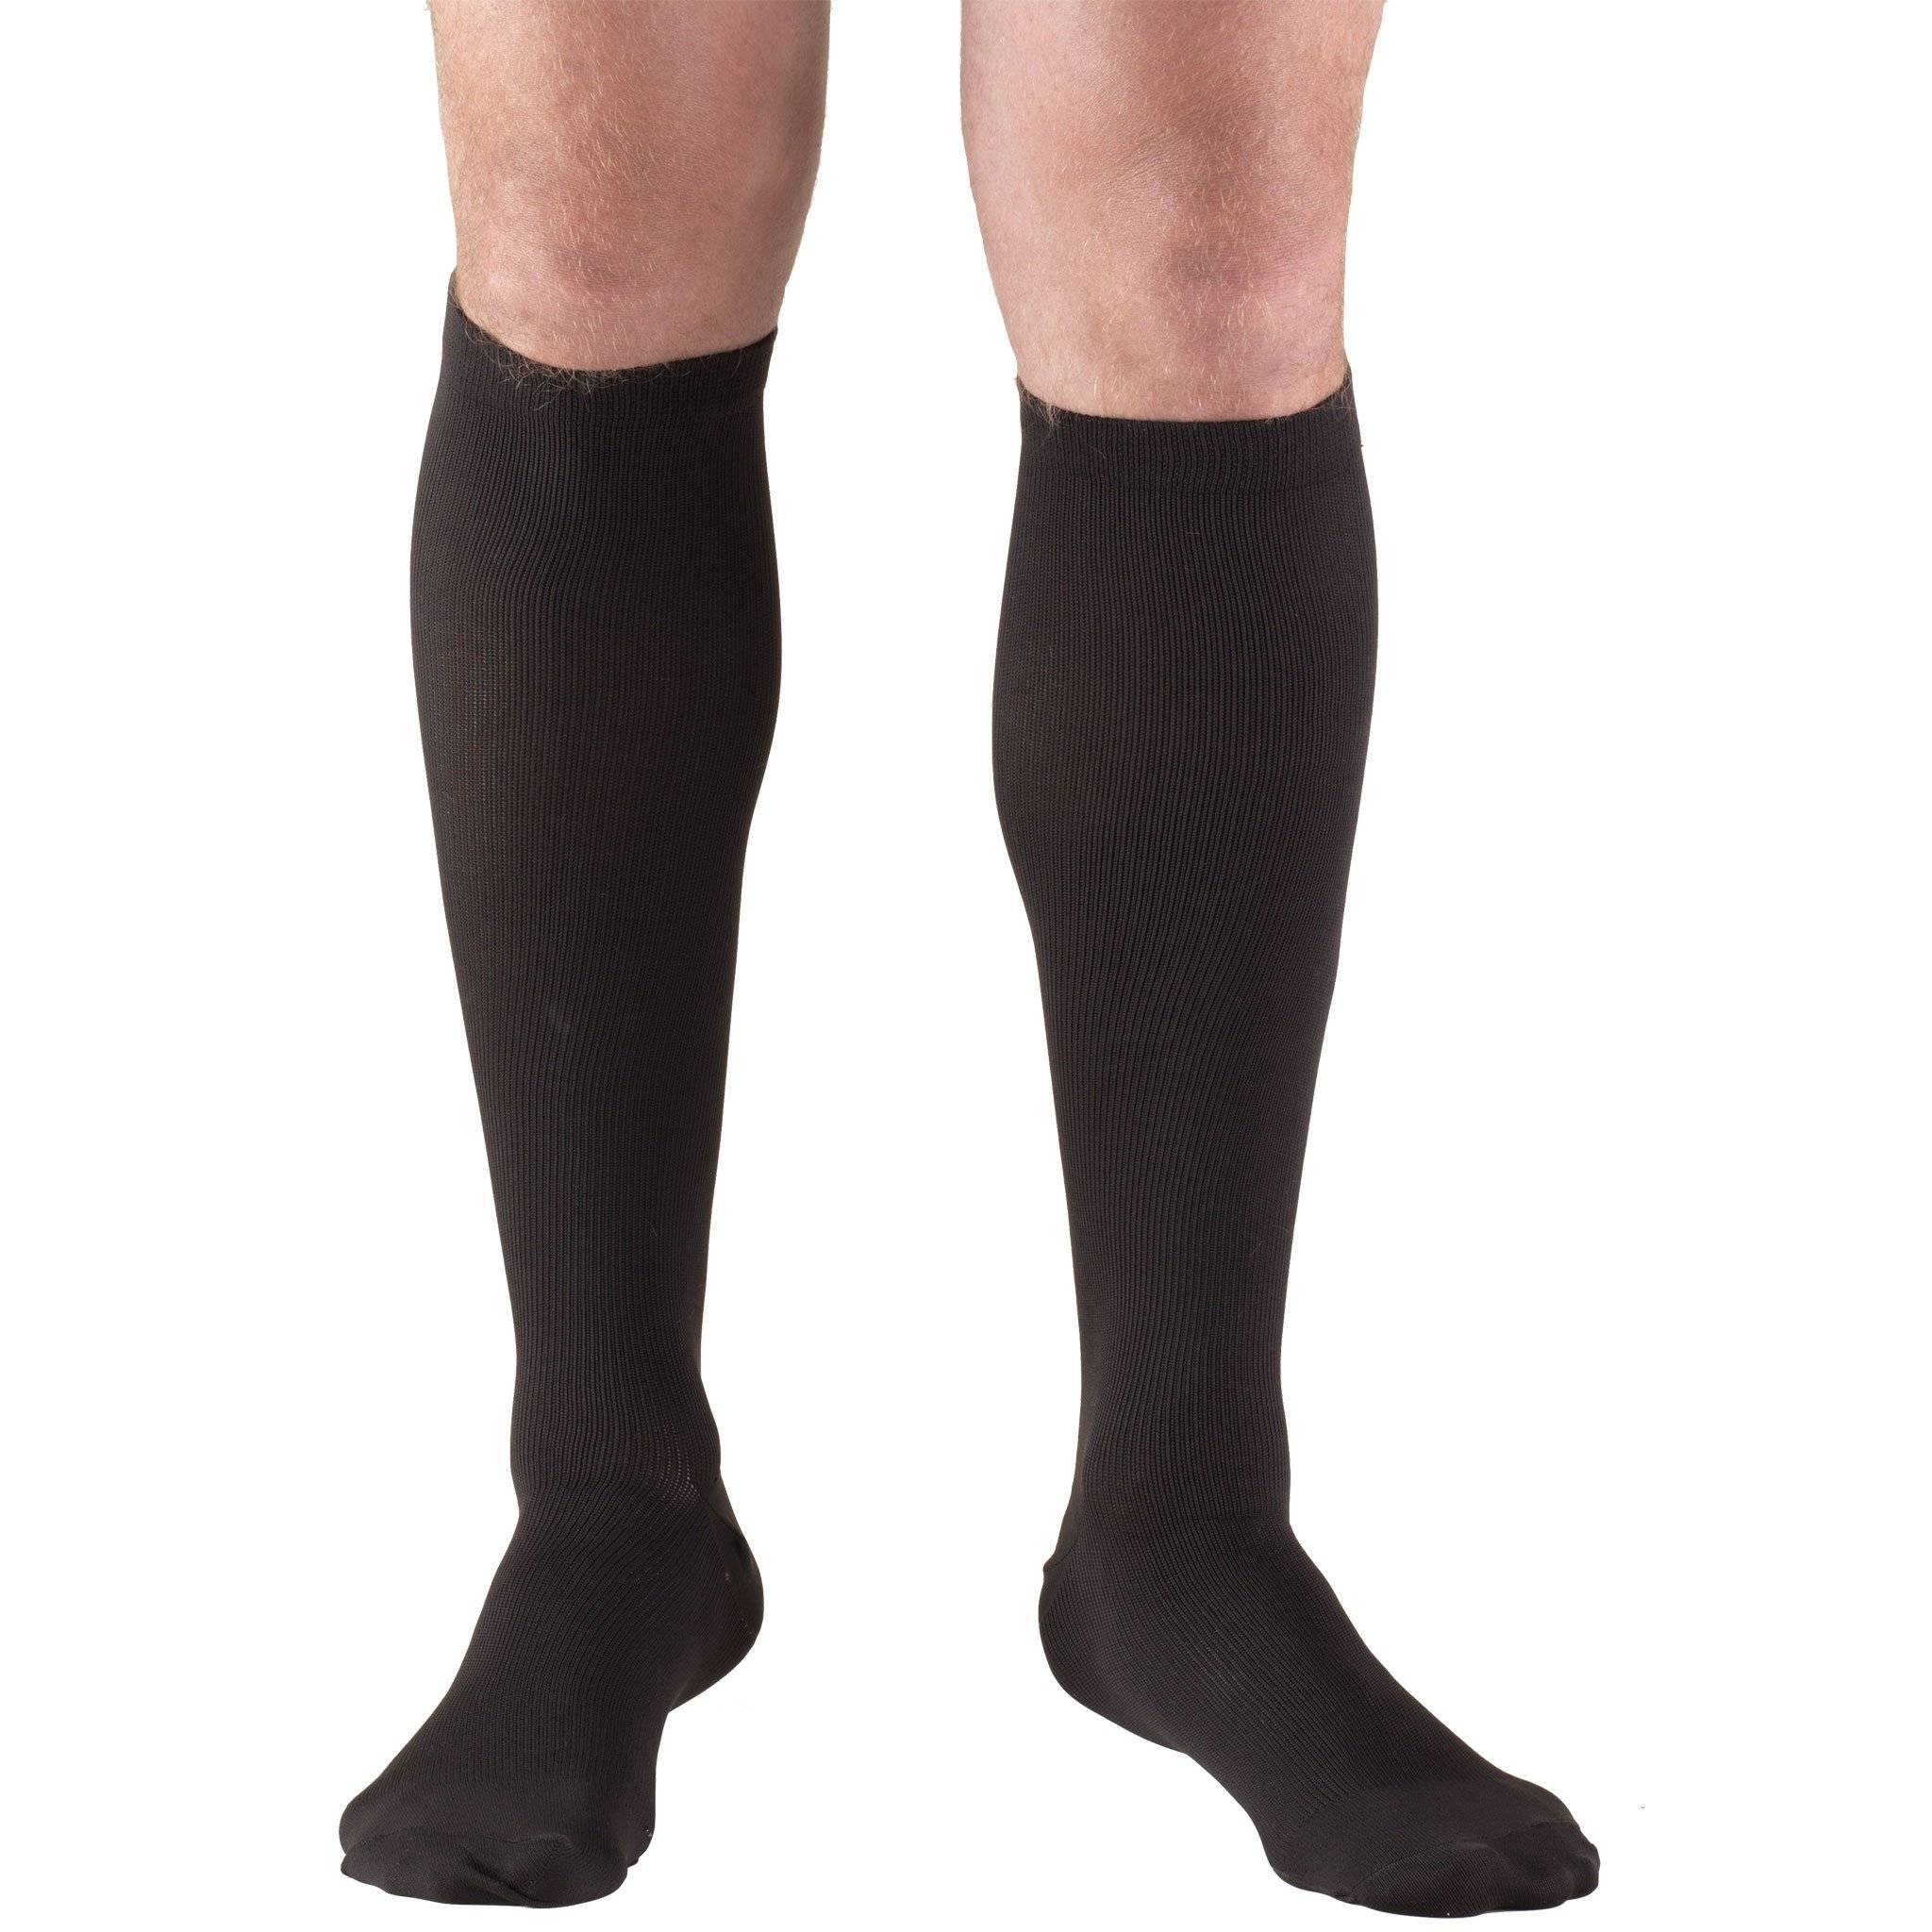 Men's Knee High Dress Socks